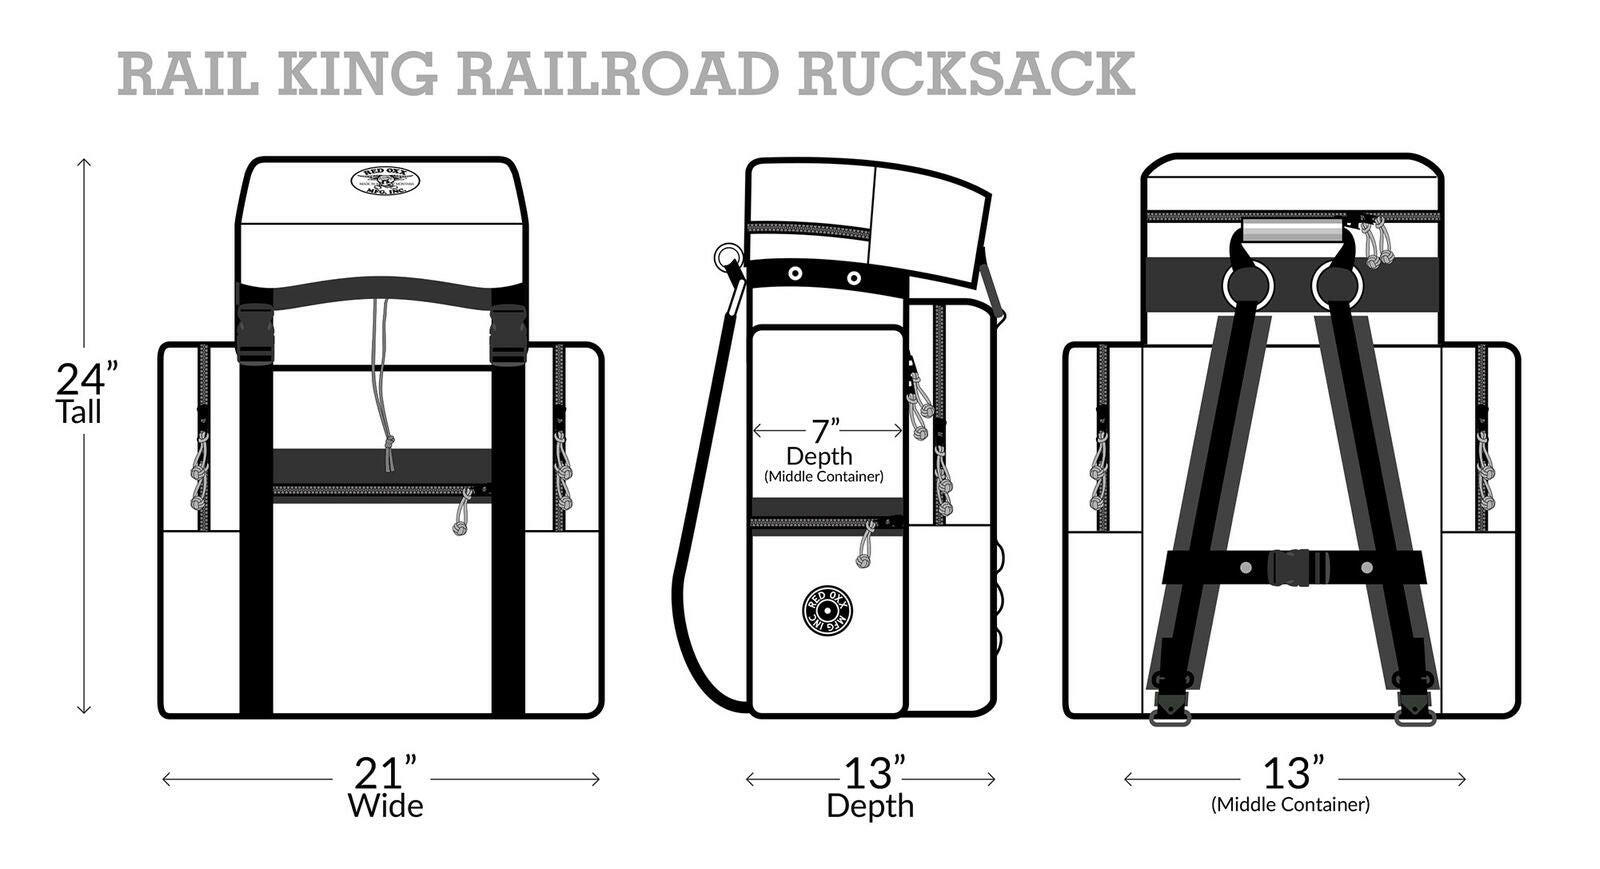 Rail King visual dimensions